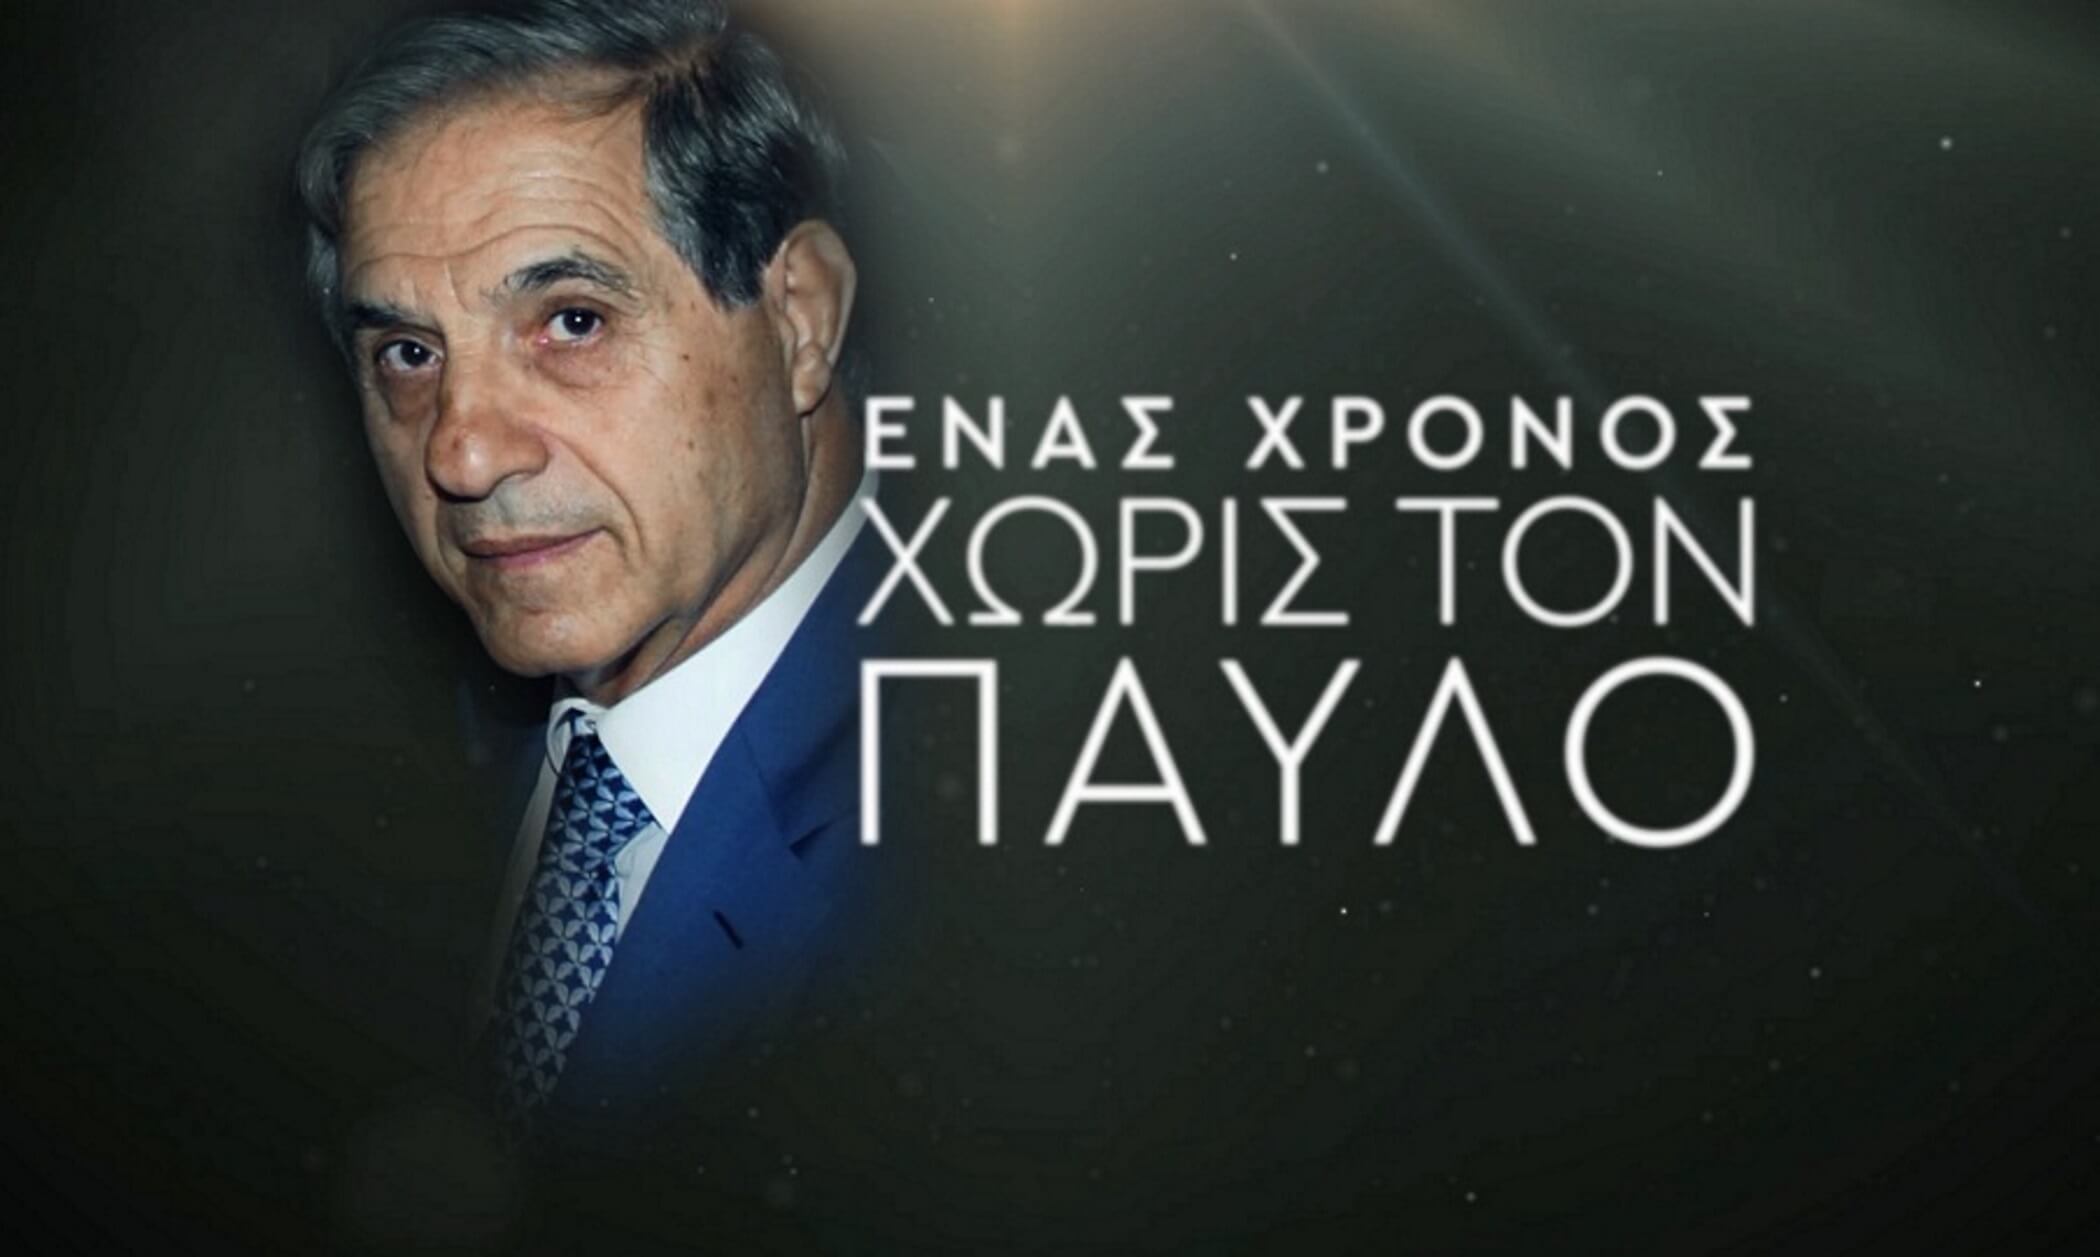 Παύλος Γιαννακόπουλος: Το συγκινητικό βίντεο για τον έναν χρόνο από τον θάνατο του